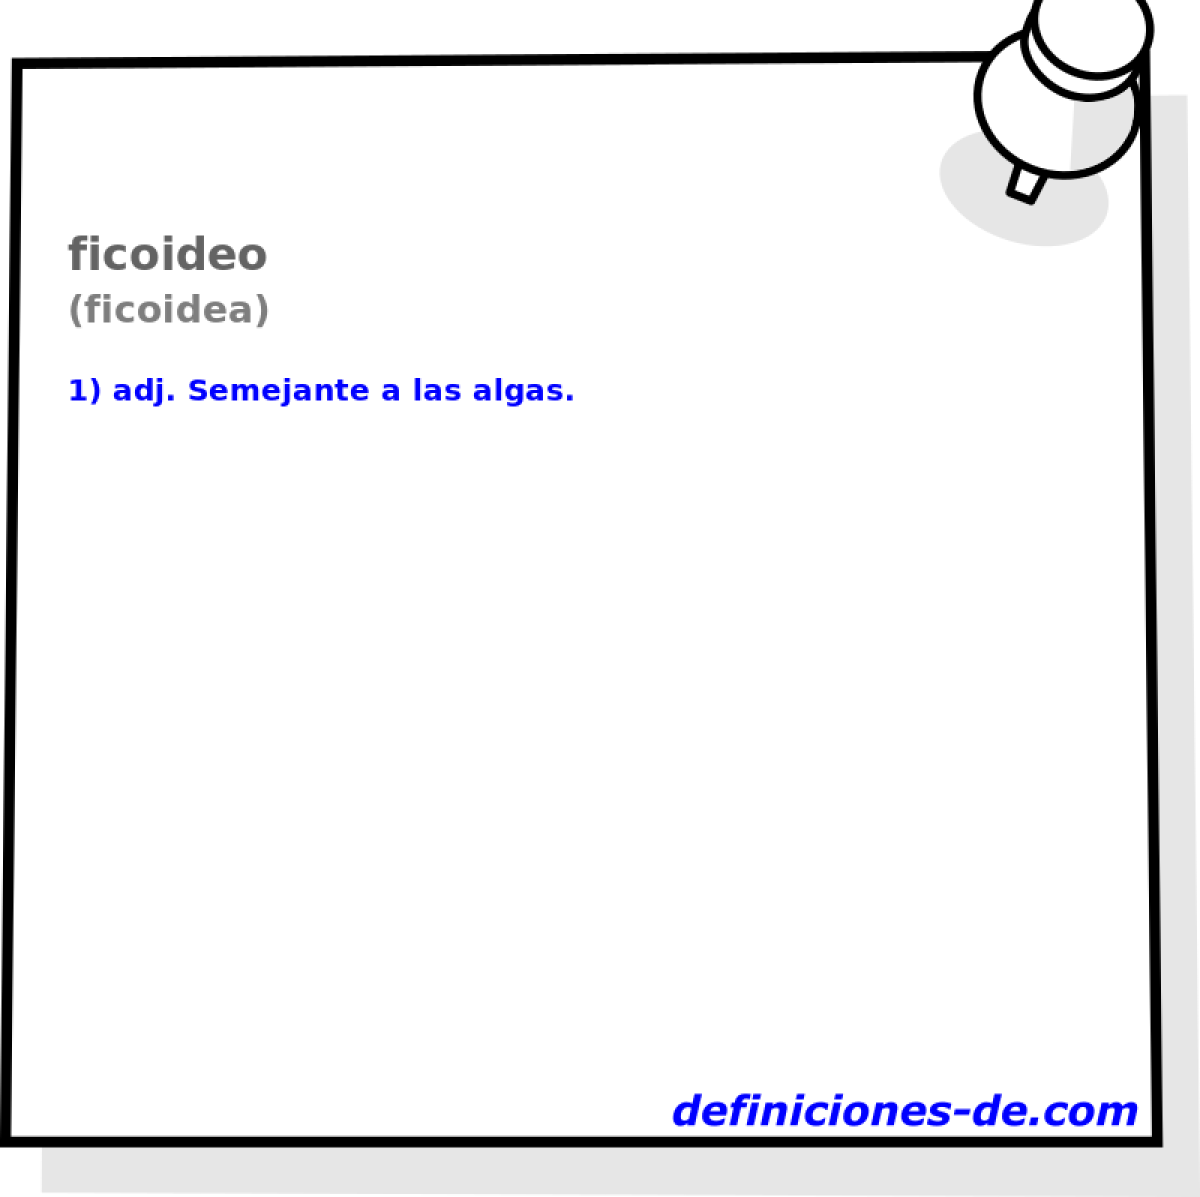 ficoideo (ficoidea)